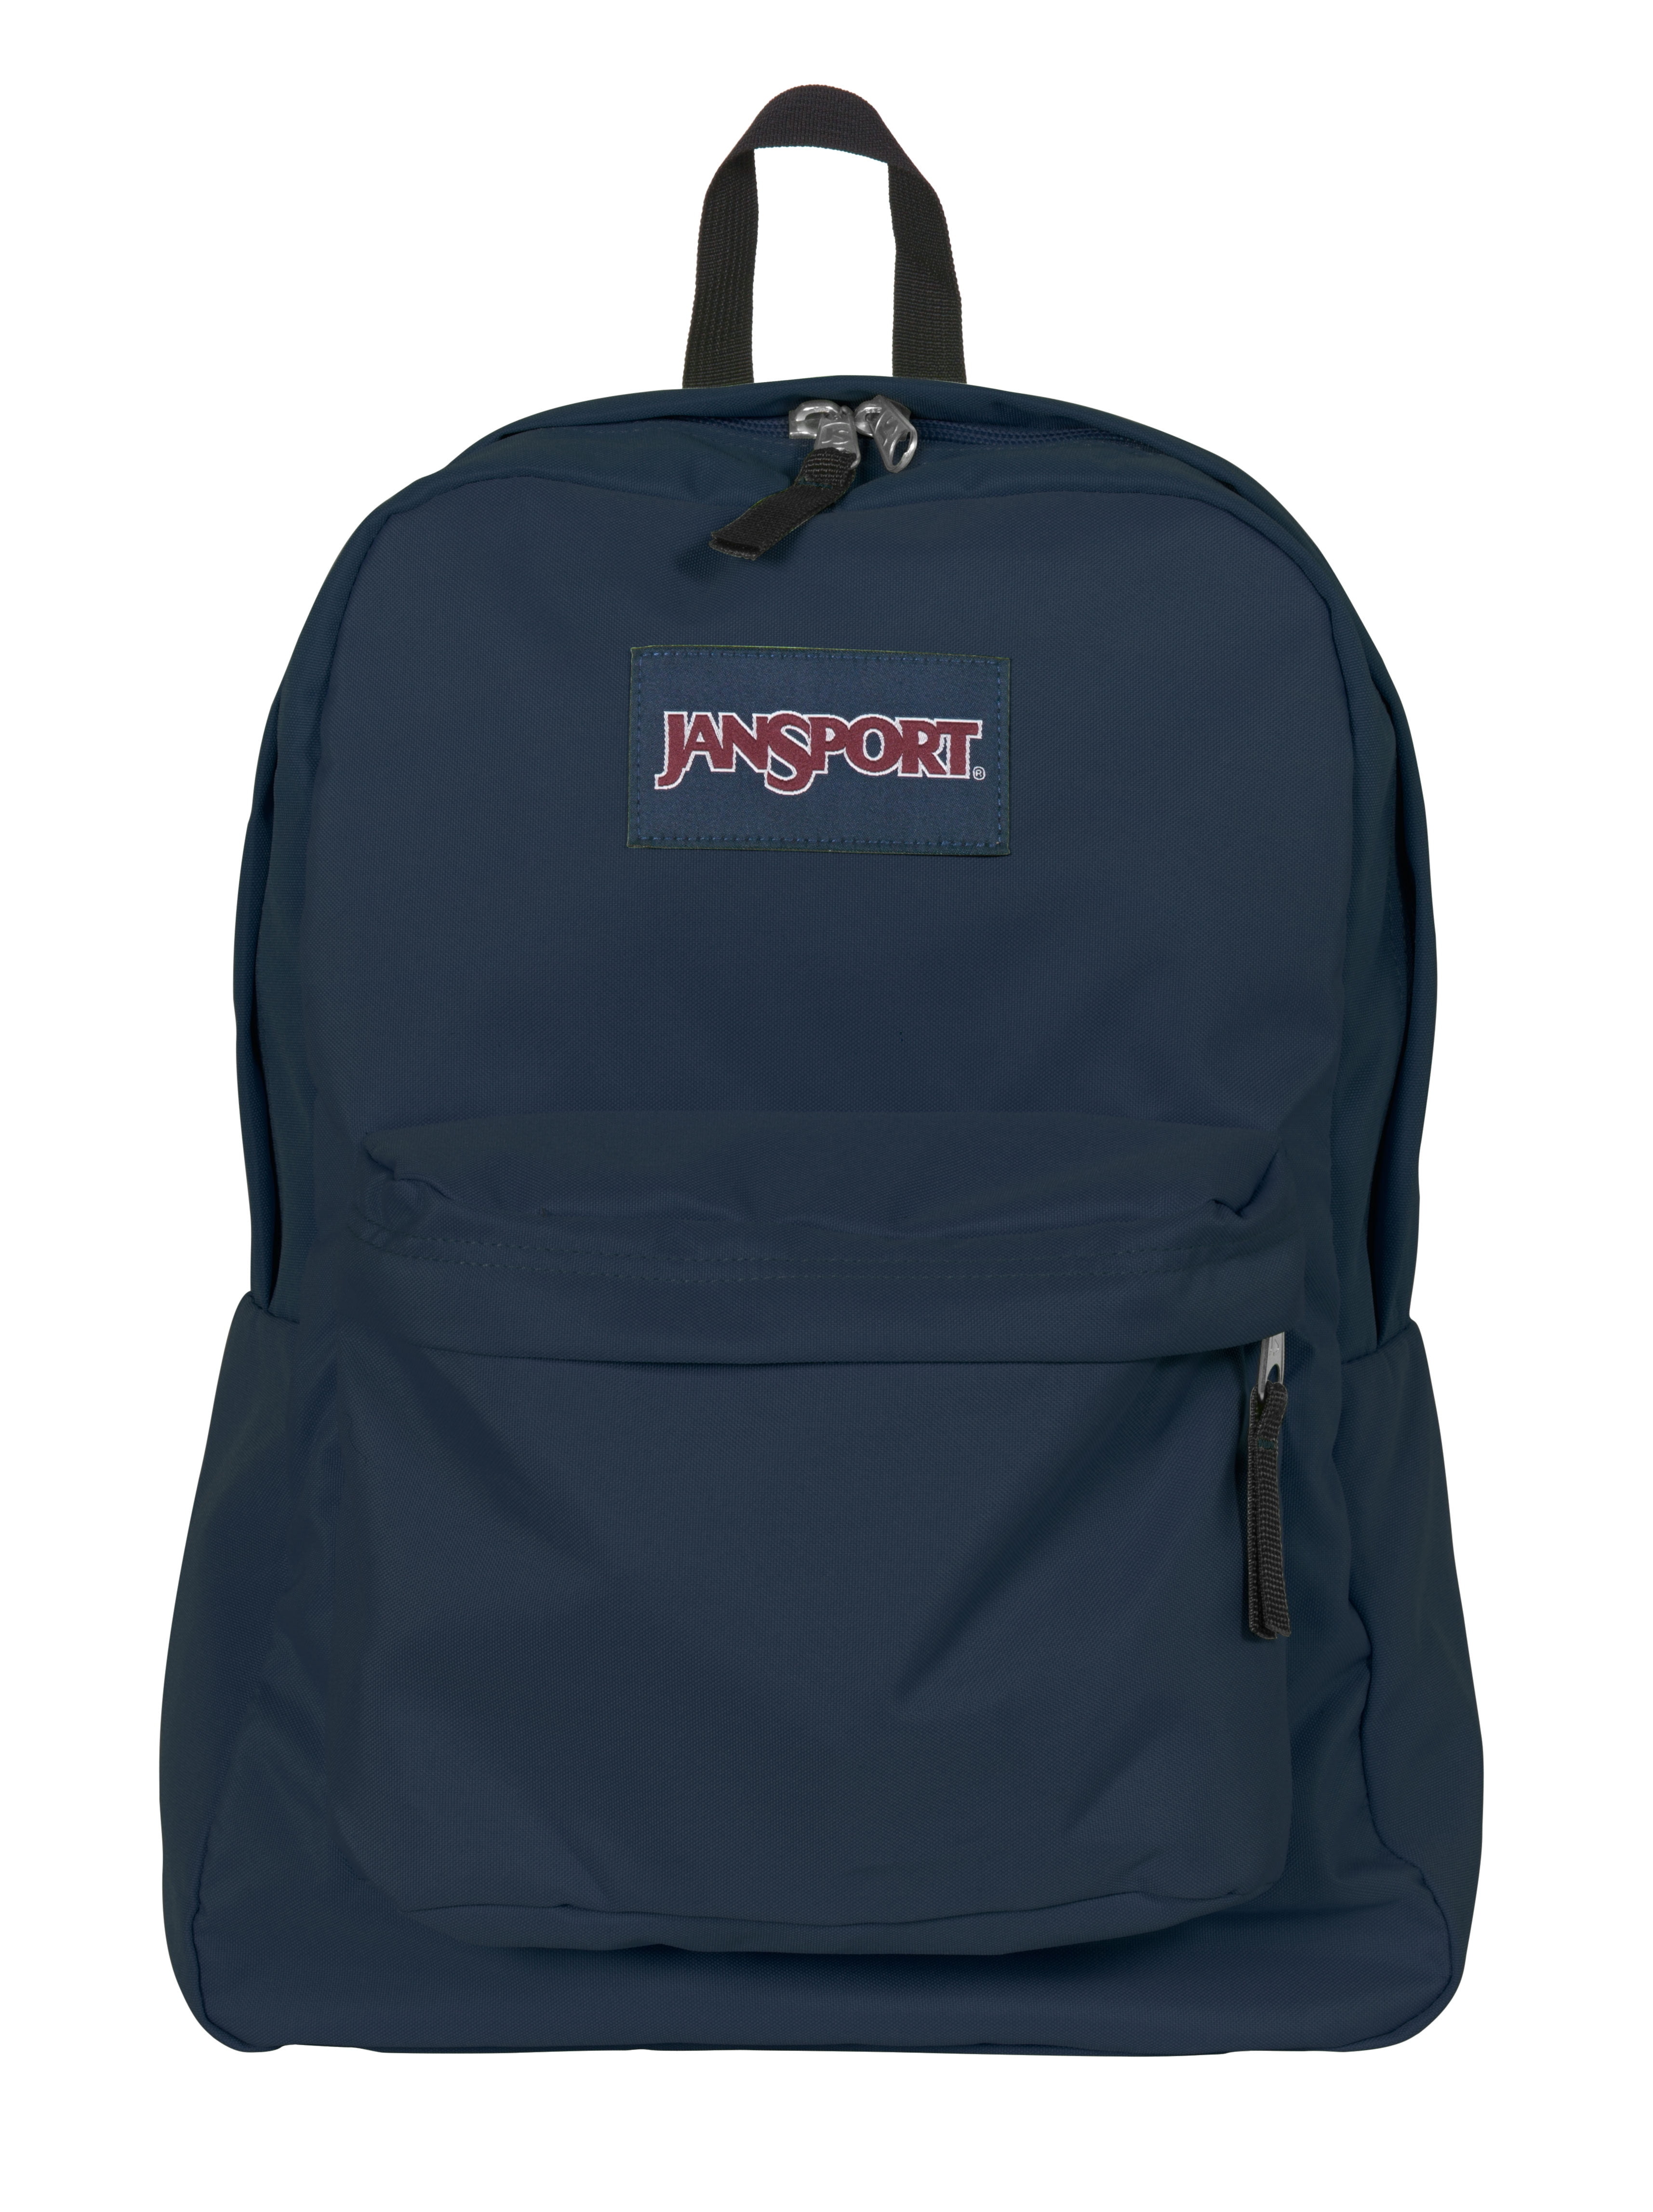 Jansport Navy Superbreak Backpack